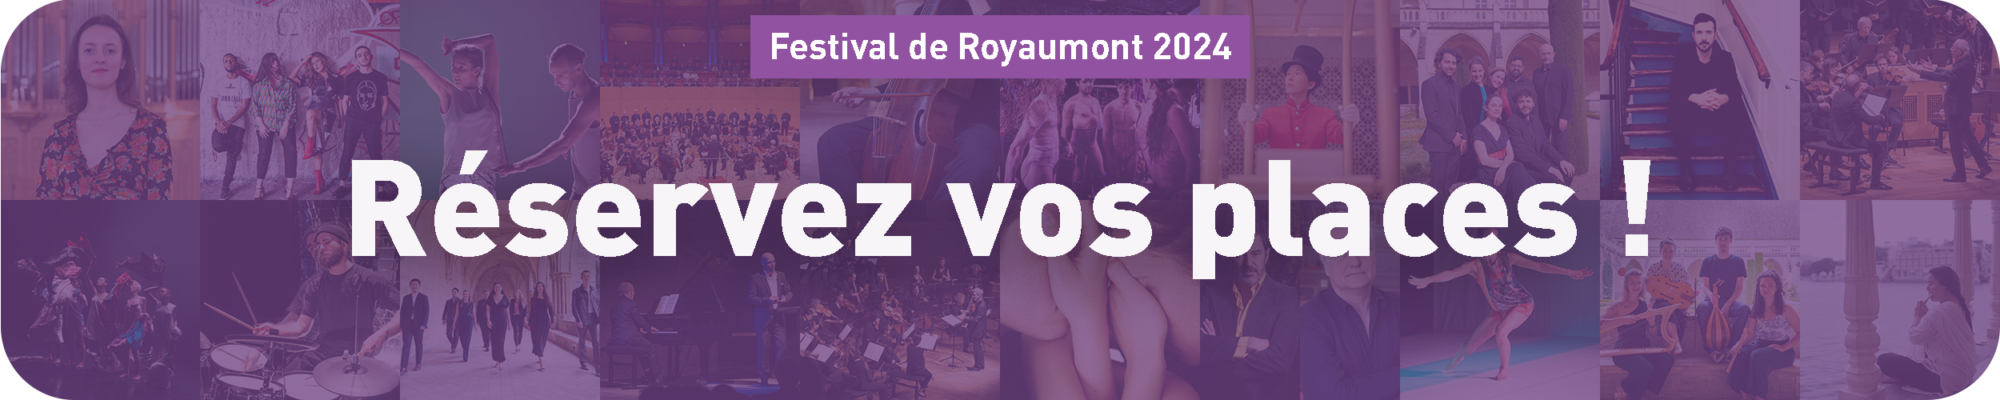 Réservez vos places pour le Festival de Royaumont